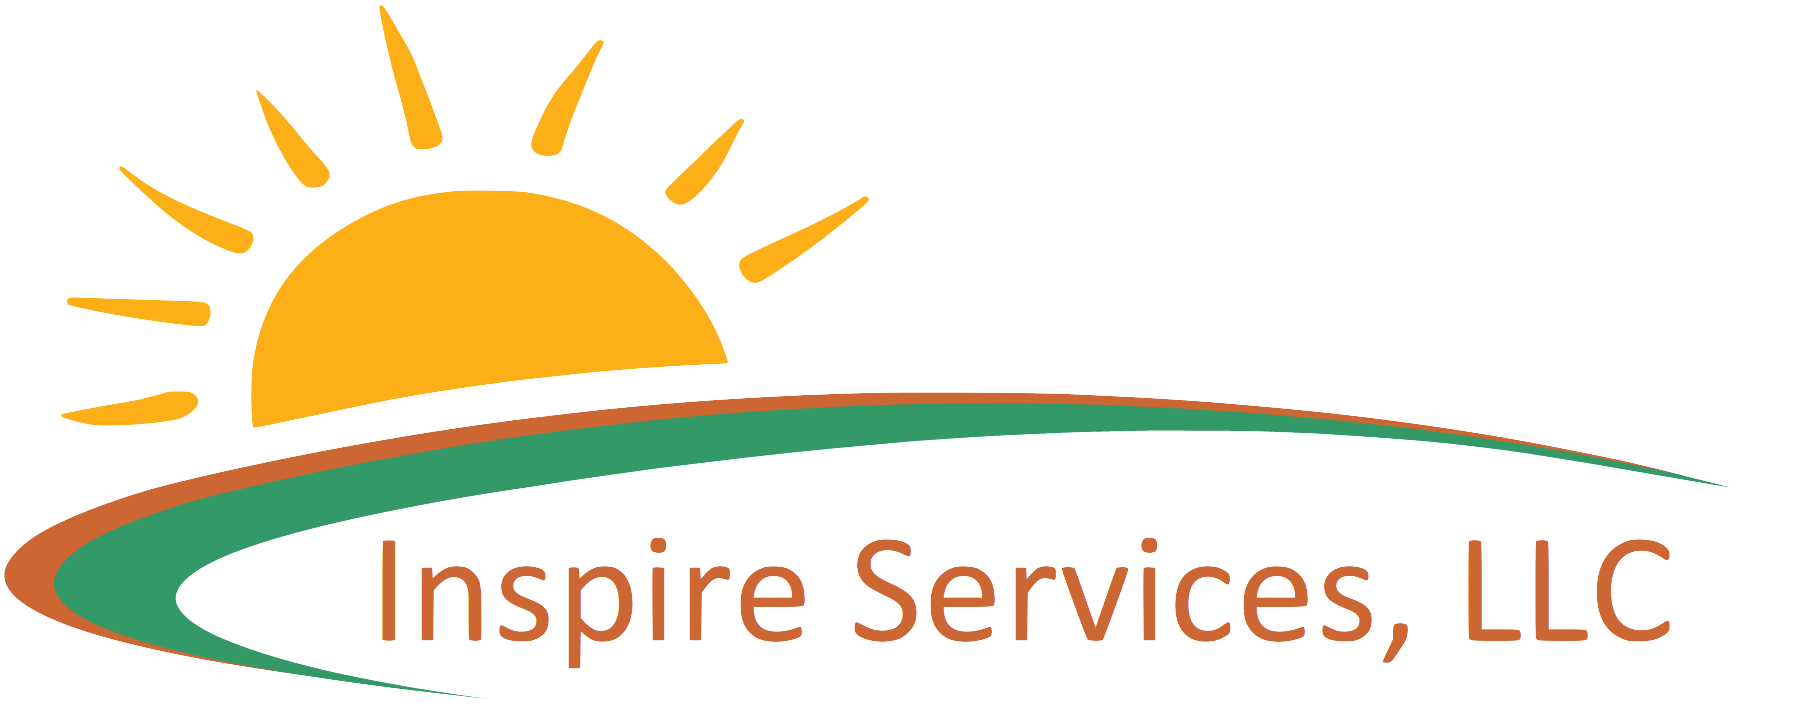 Inspire Services, LLC - Nueva Ulm